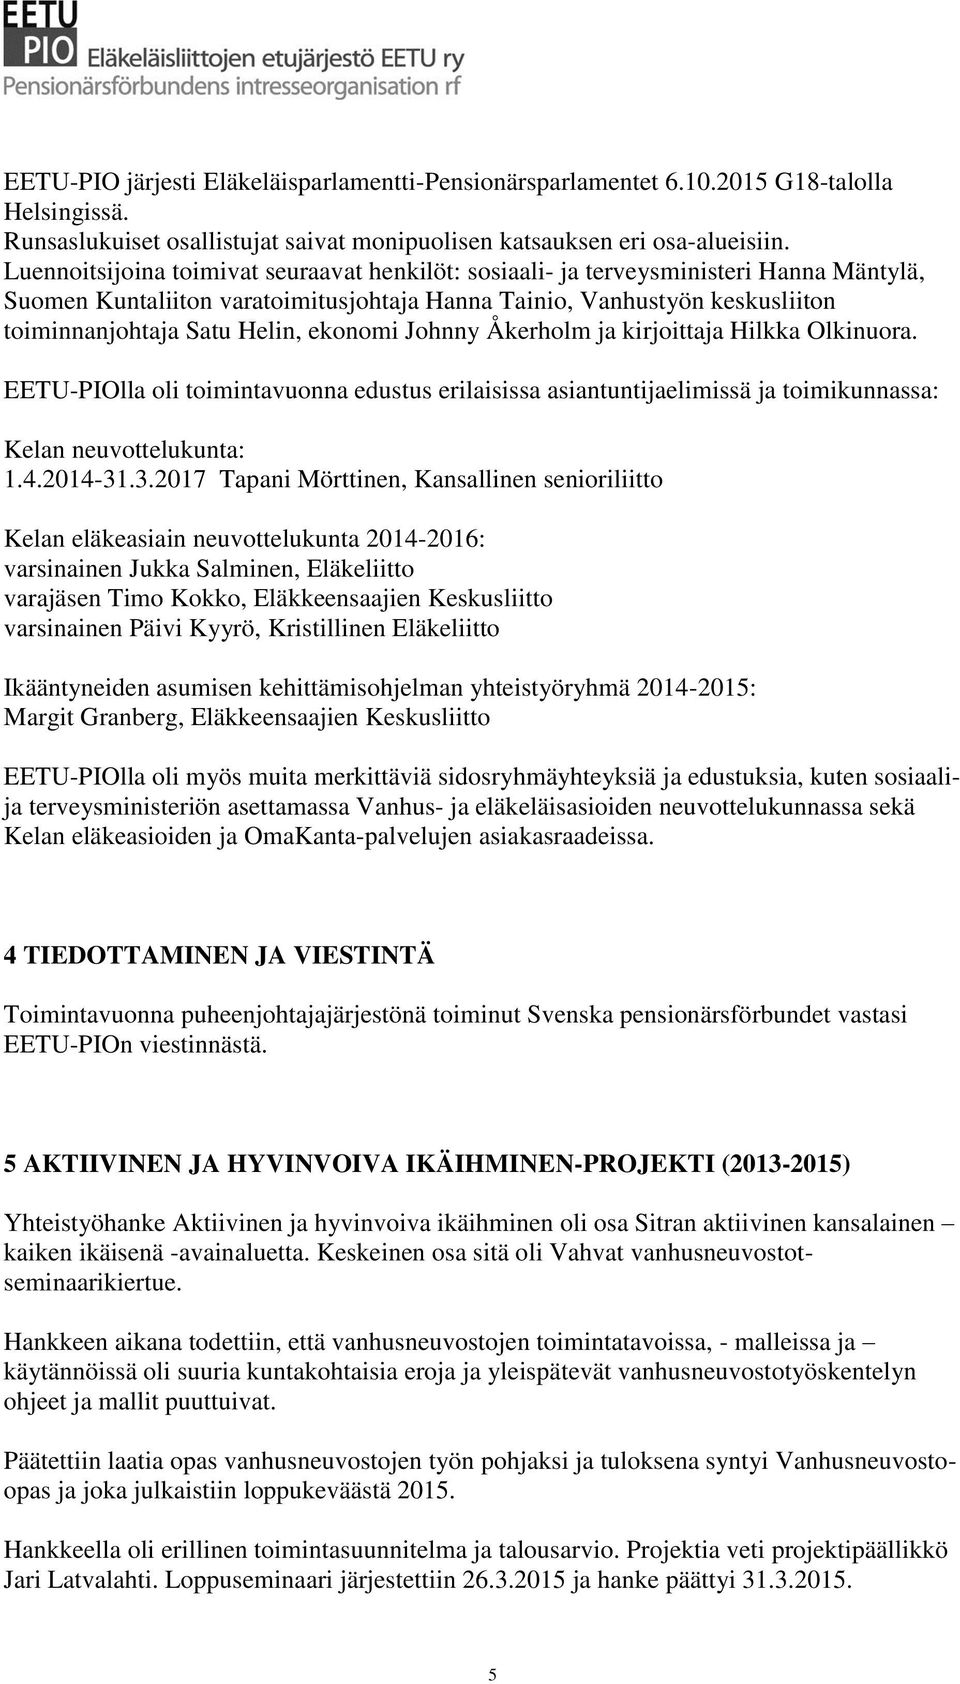 ekonomi Johnny Åkerholm ja kirjoittaja Hilkka Olkinuora. EETU-PIOlla oli toimintavuonna edustus erilaisissa asiantuntijaelimissä ja toimikunnassa: Kelan neuvottelukunta: 1.4.2014-31